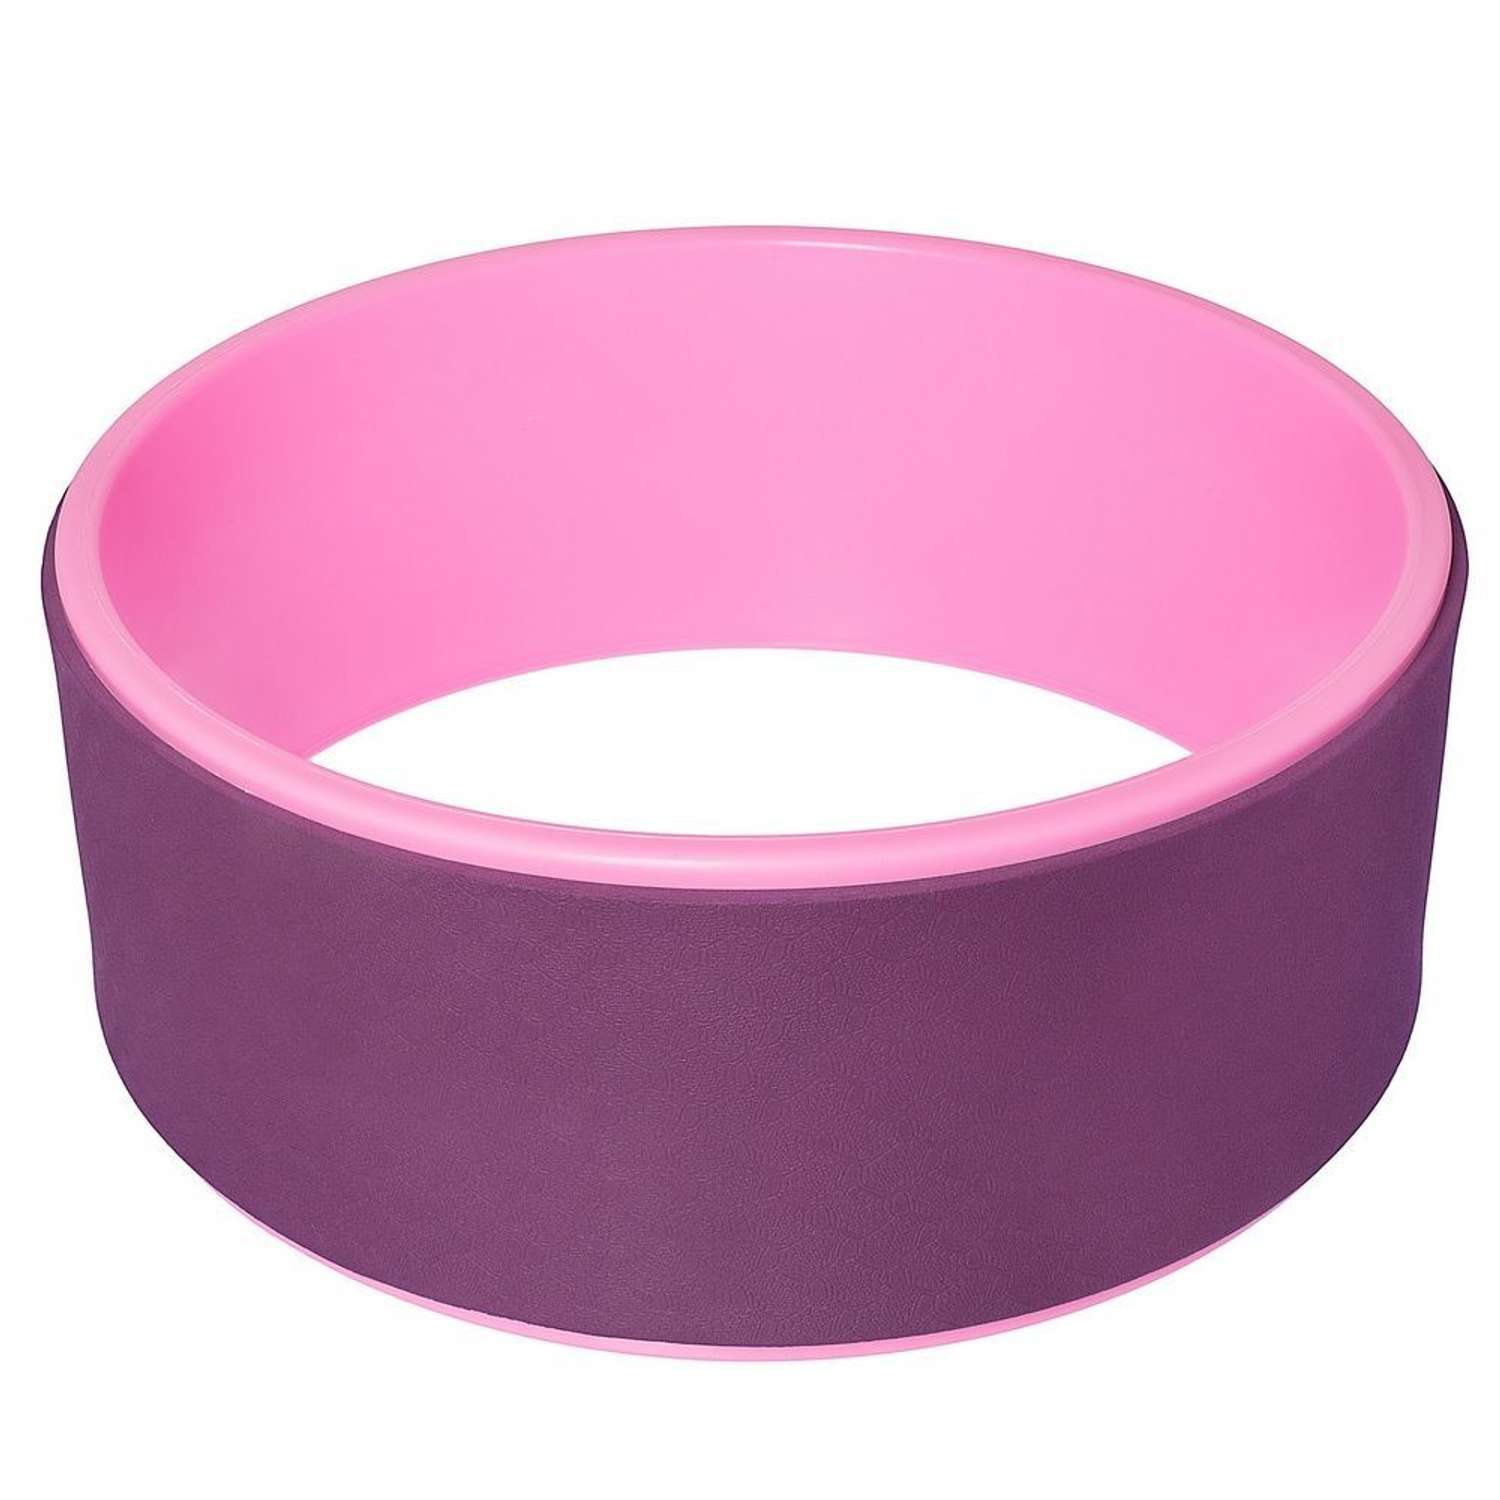 Колесо для йоги STRONG BODY фитнеса и пилатес 30 см х 12 см пурпурно-розовое - фото 3